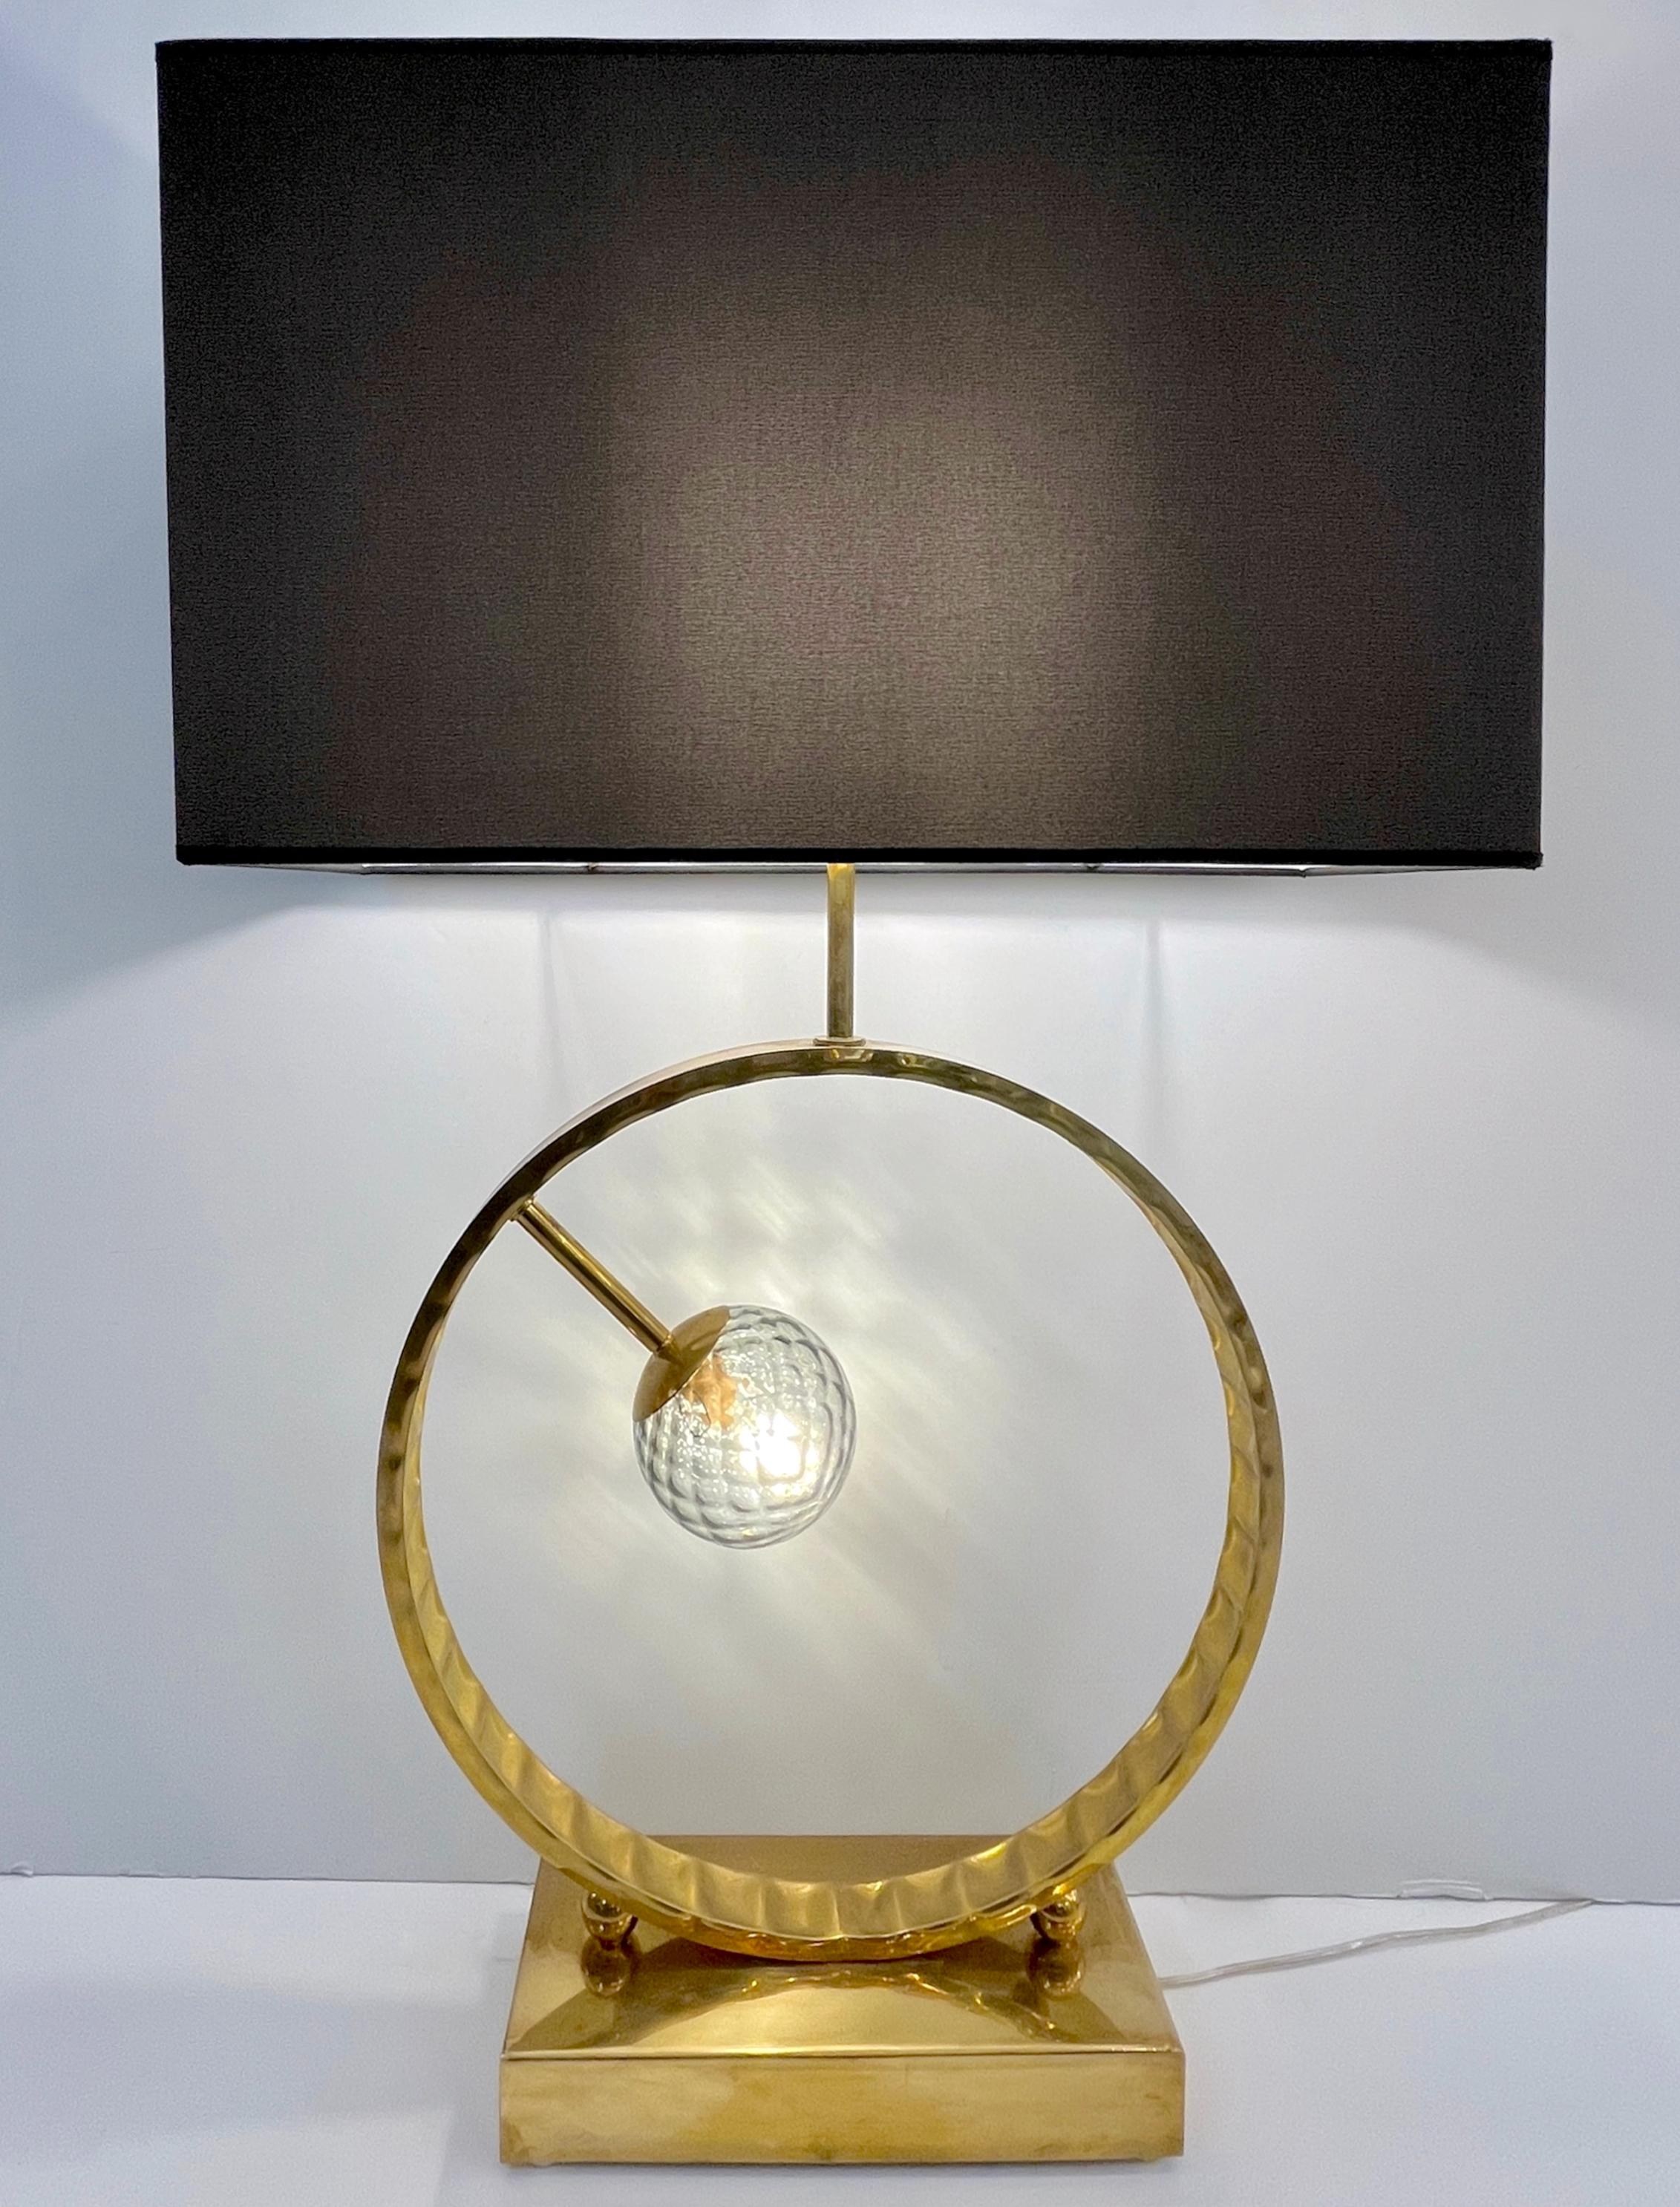 2 Disponibles - Le globe en verre Murano peut être choisi dans différentes couleurs, voir image - Une lampe de table contemporaine très décorative de grande taille, entièrement fabriquée à la main en Italie, avec un design géométrique minimaliste